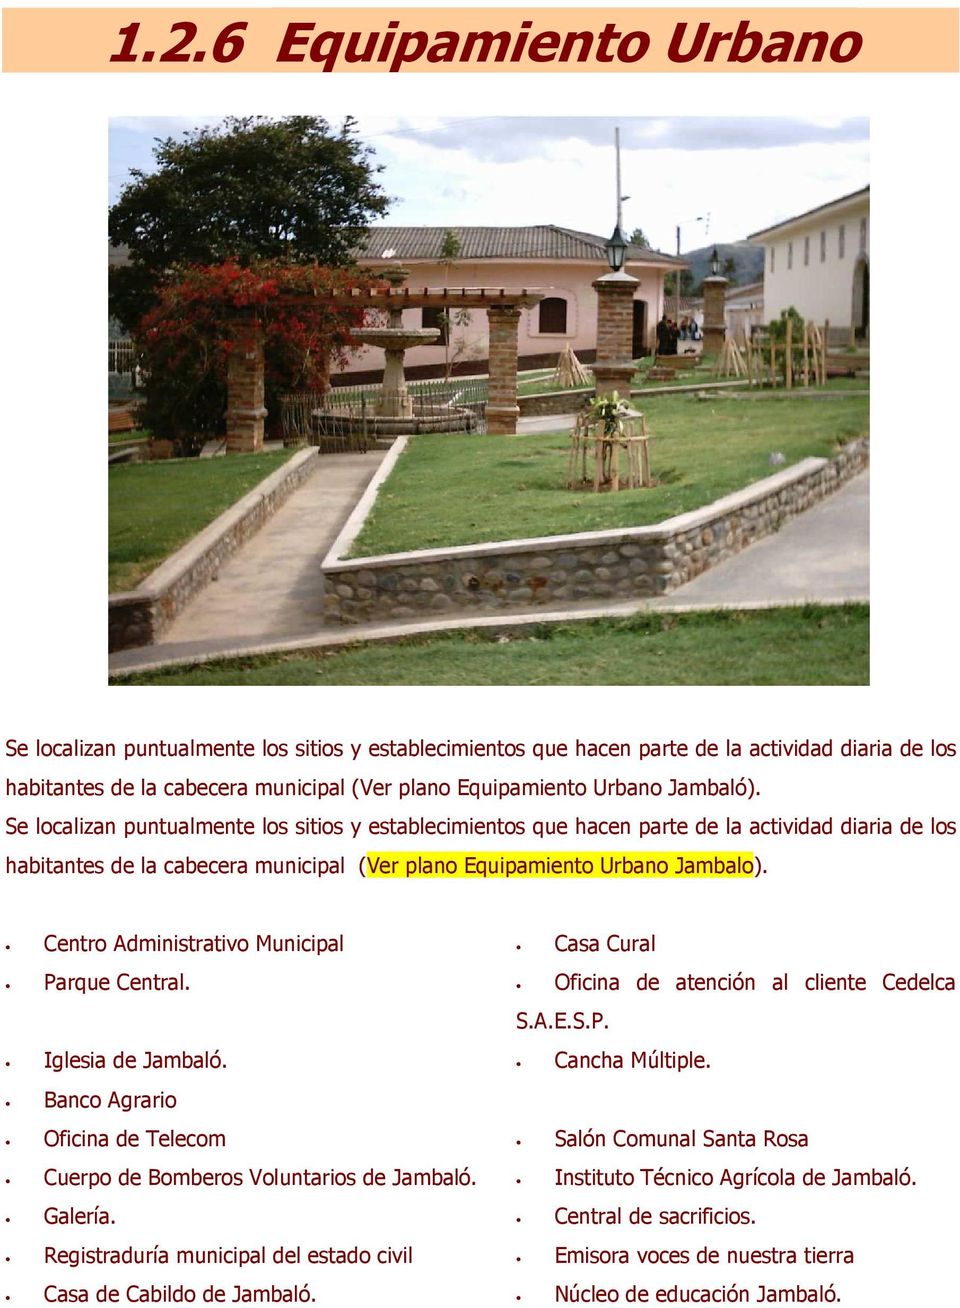 Centro Administrativo Municipal Casa Cural Parque Central. Oficina de atención al cliente Cedelca Iglesia de Jambaló. S.A.E.S.P. Cancha Múltiple.